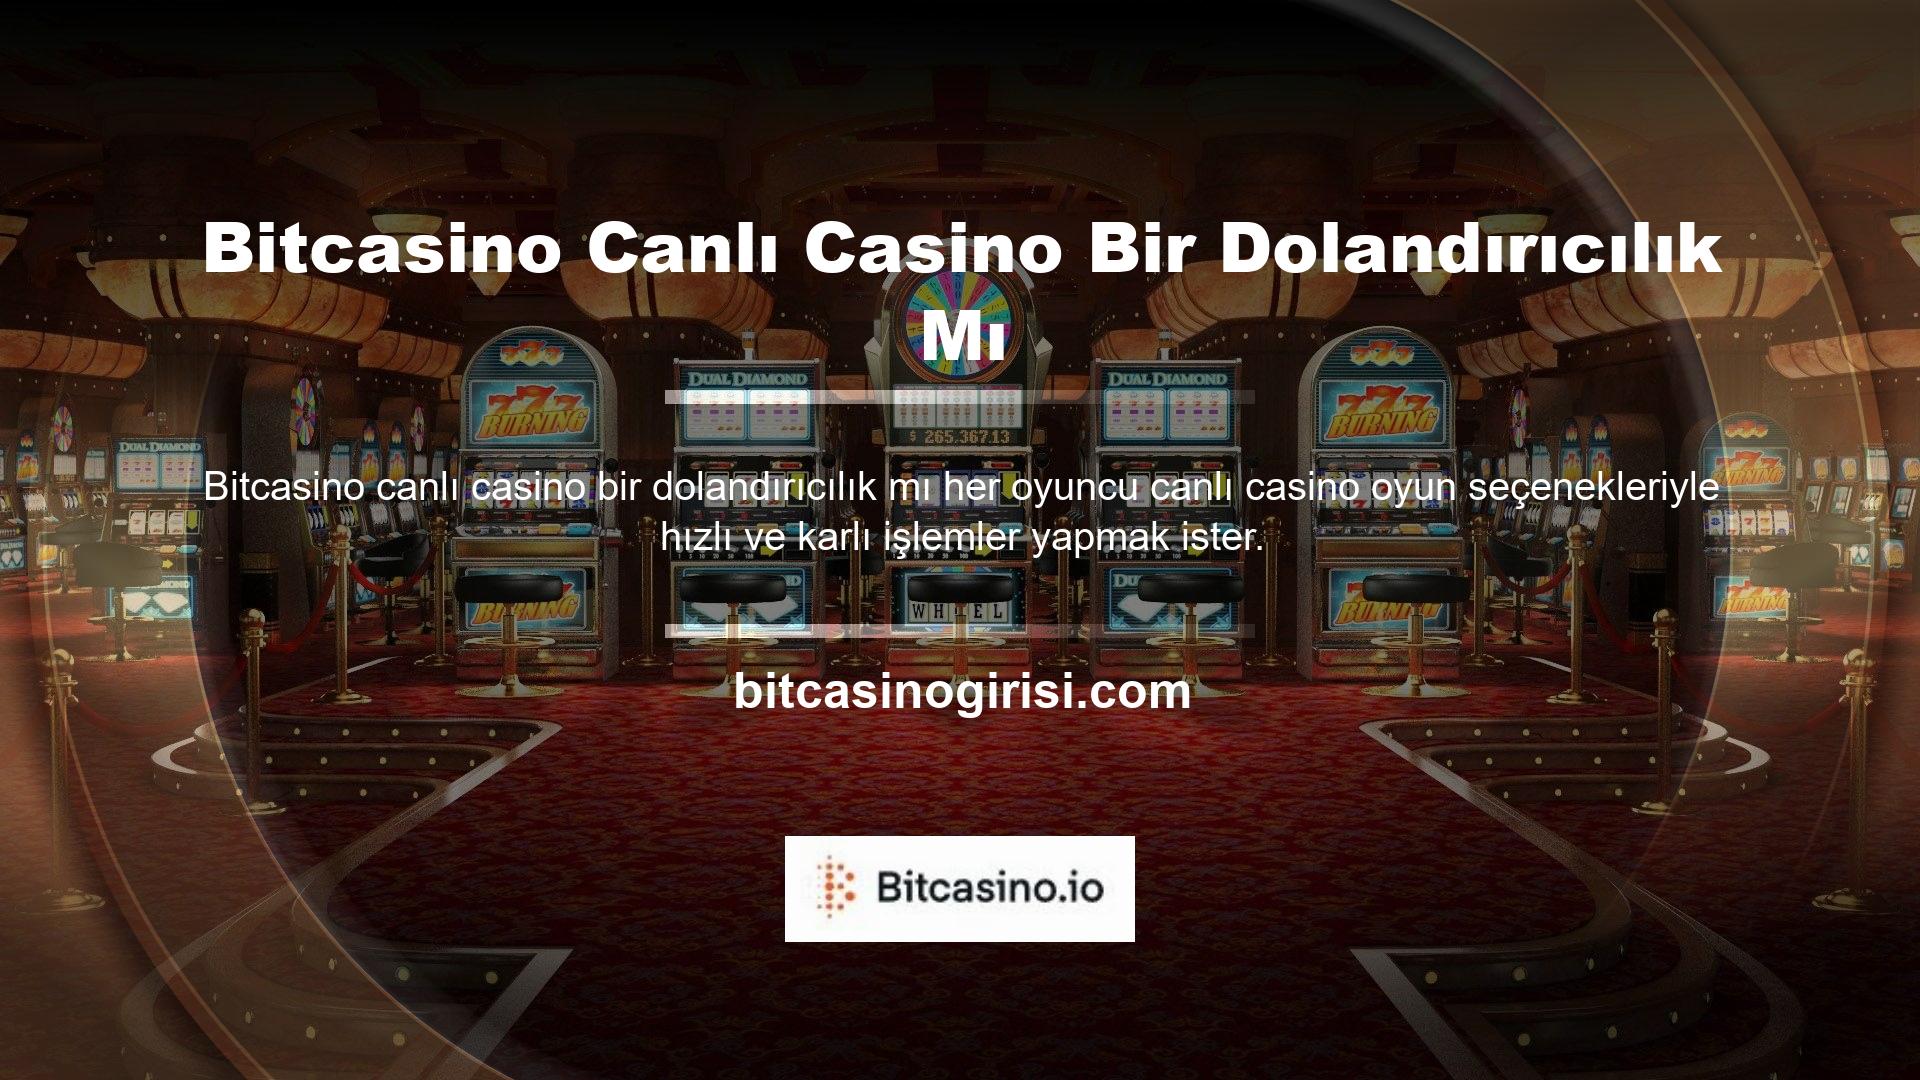 Bitcasino Canlı Casino Bir Dolandırıcılık mı? Bu durum oyuncuların merakını uyandıran Bitcasino Canlı Casino'nun hile yapıp yapmadığı sorusunu gündeme getiriyor